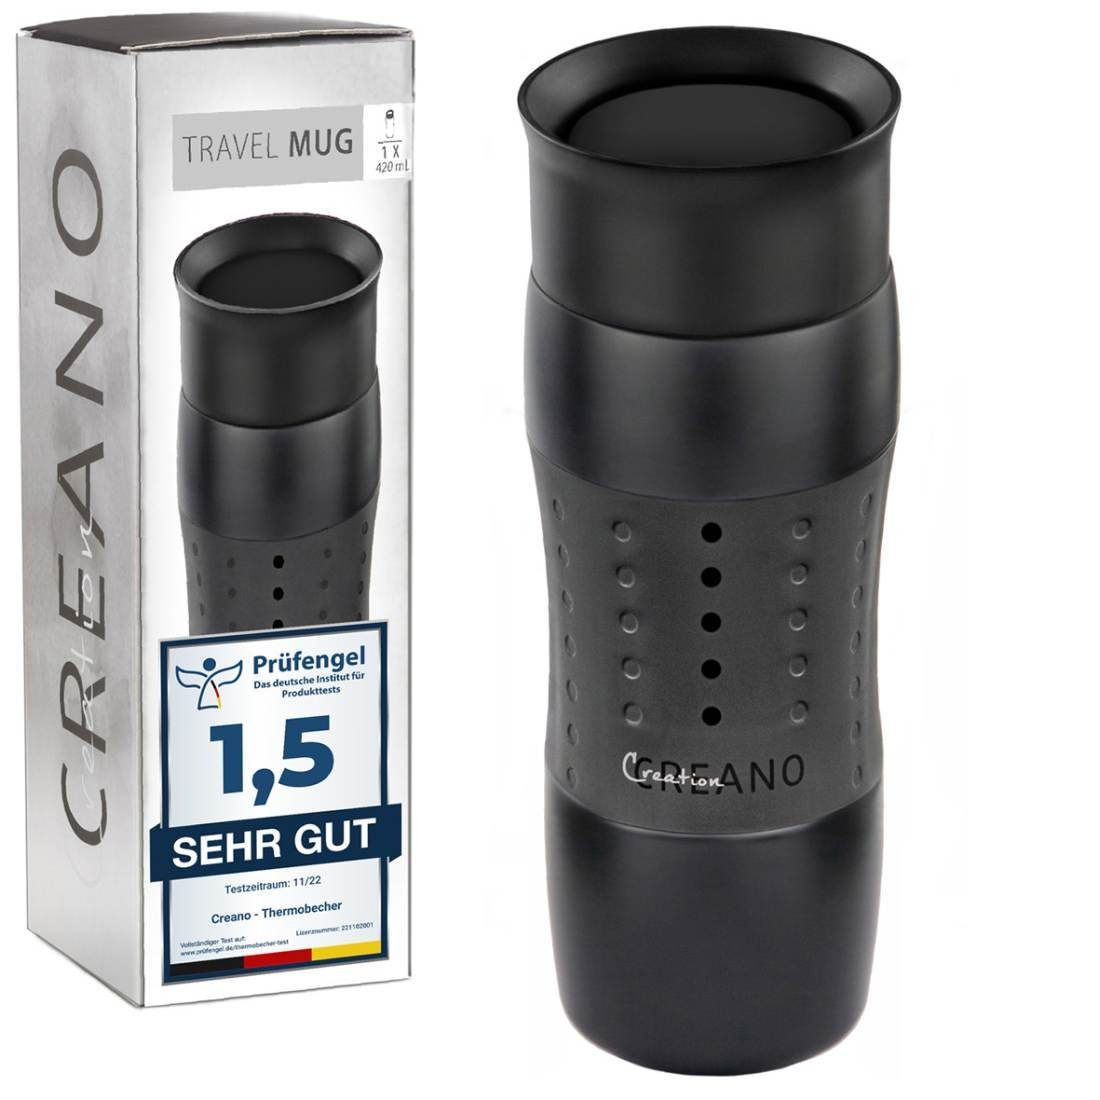 420ml, einache Mug abnehmbare Thermoflasche Reinigung, für Creano Dicht 100% Perfekt für Travel unterwegs Design Auslaufsicher! & Öffnung zu